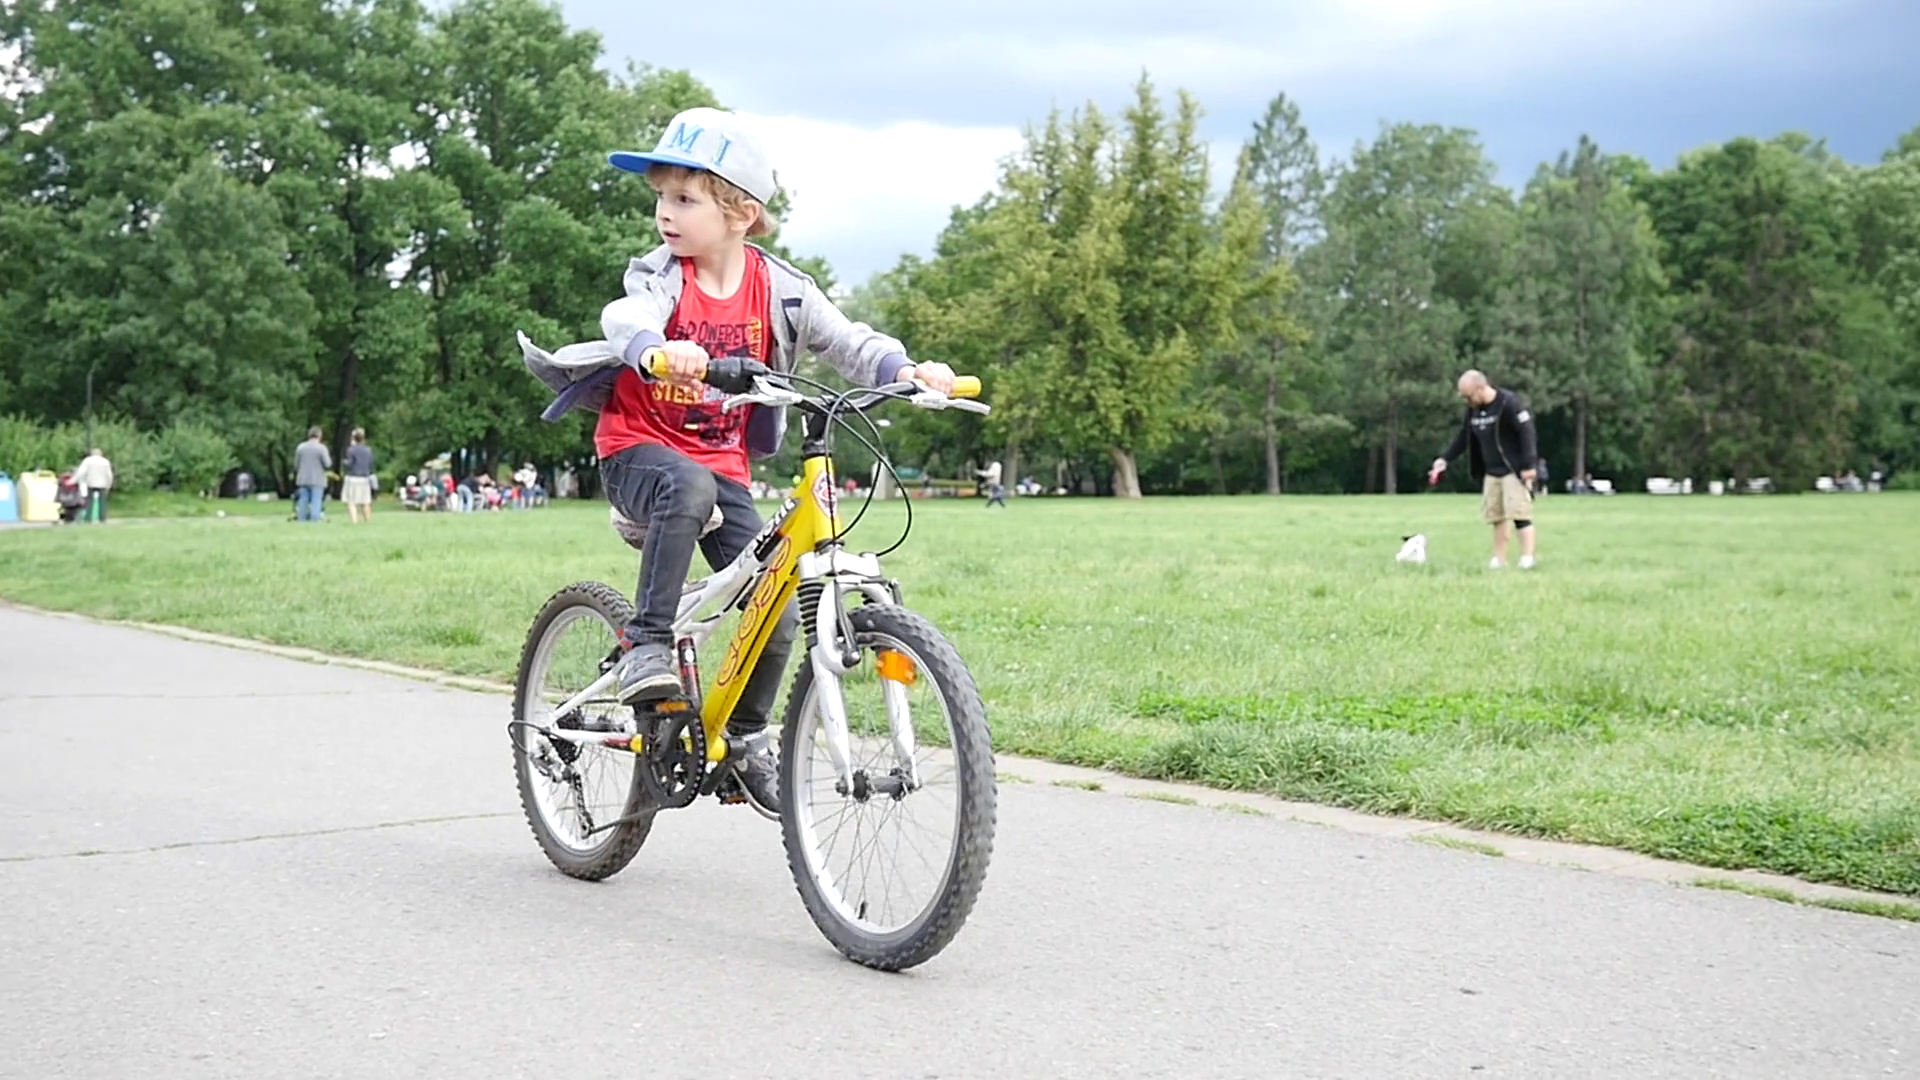 He rode a bike yesterday. Дети катаются на велосипеде. Велоспорт для детей. Kid riding a Bike. Ride a Bike Park Kids.